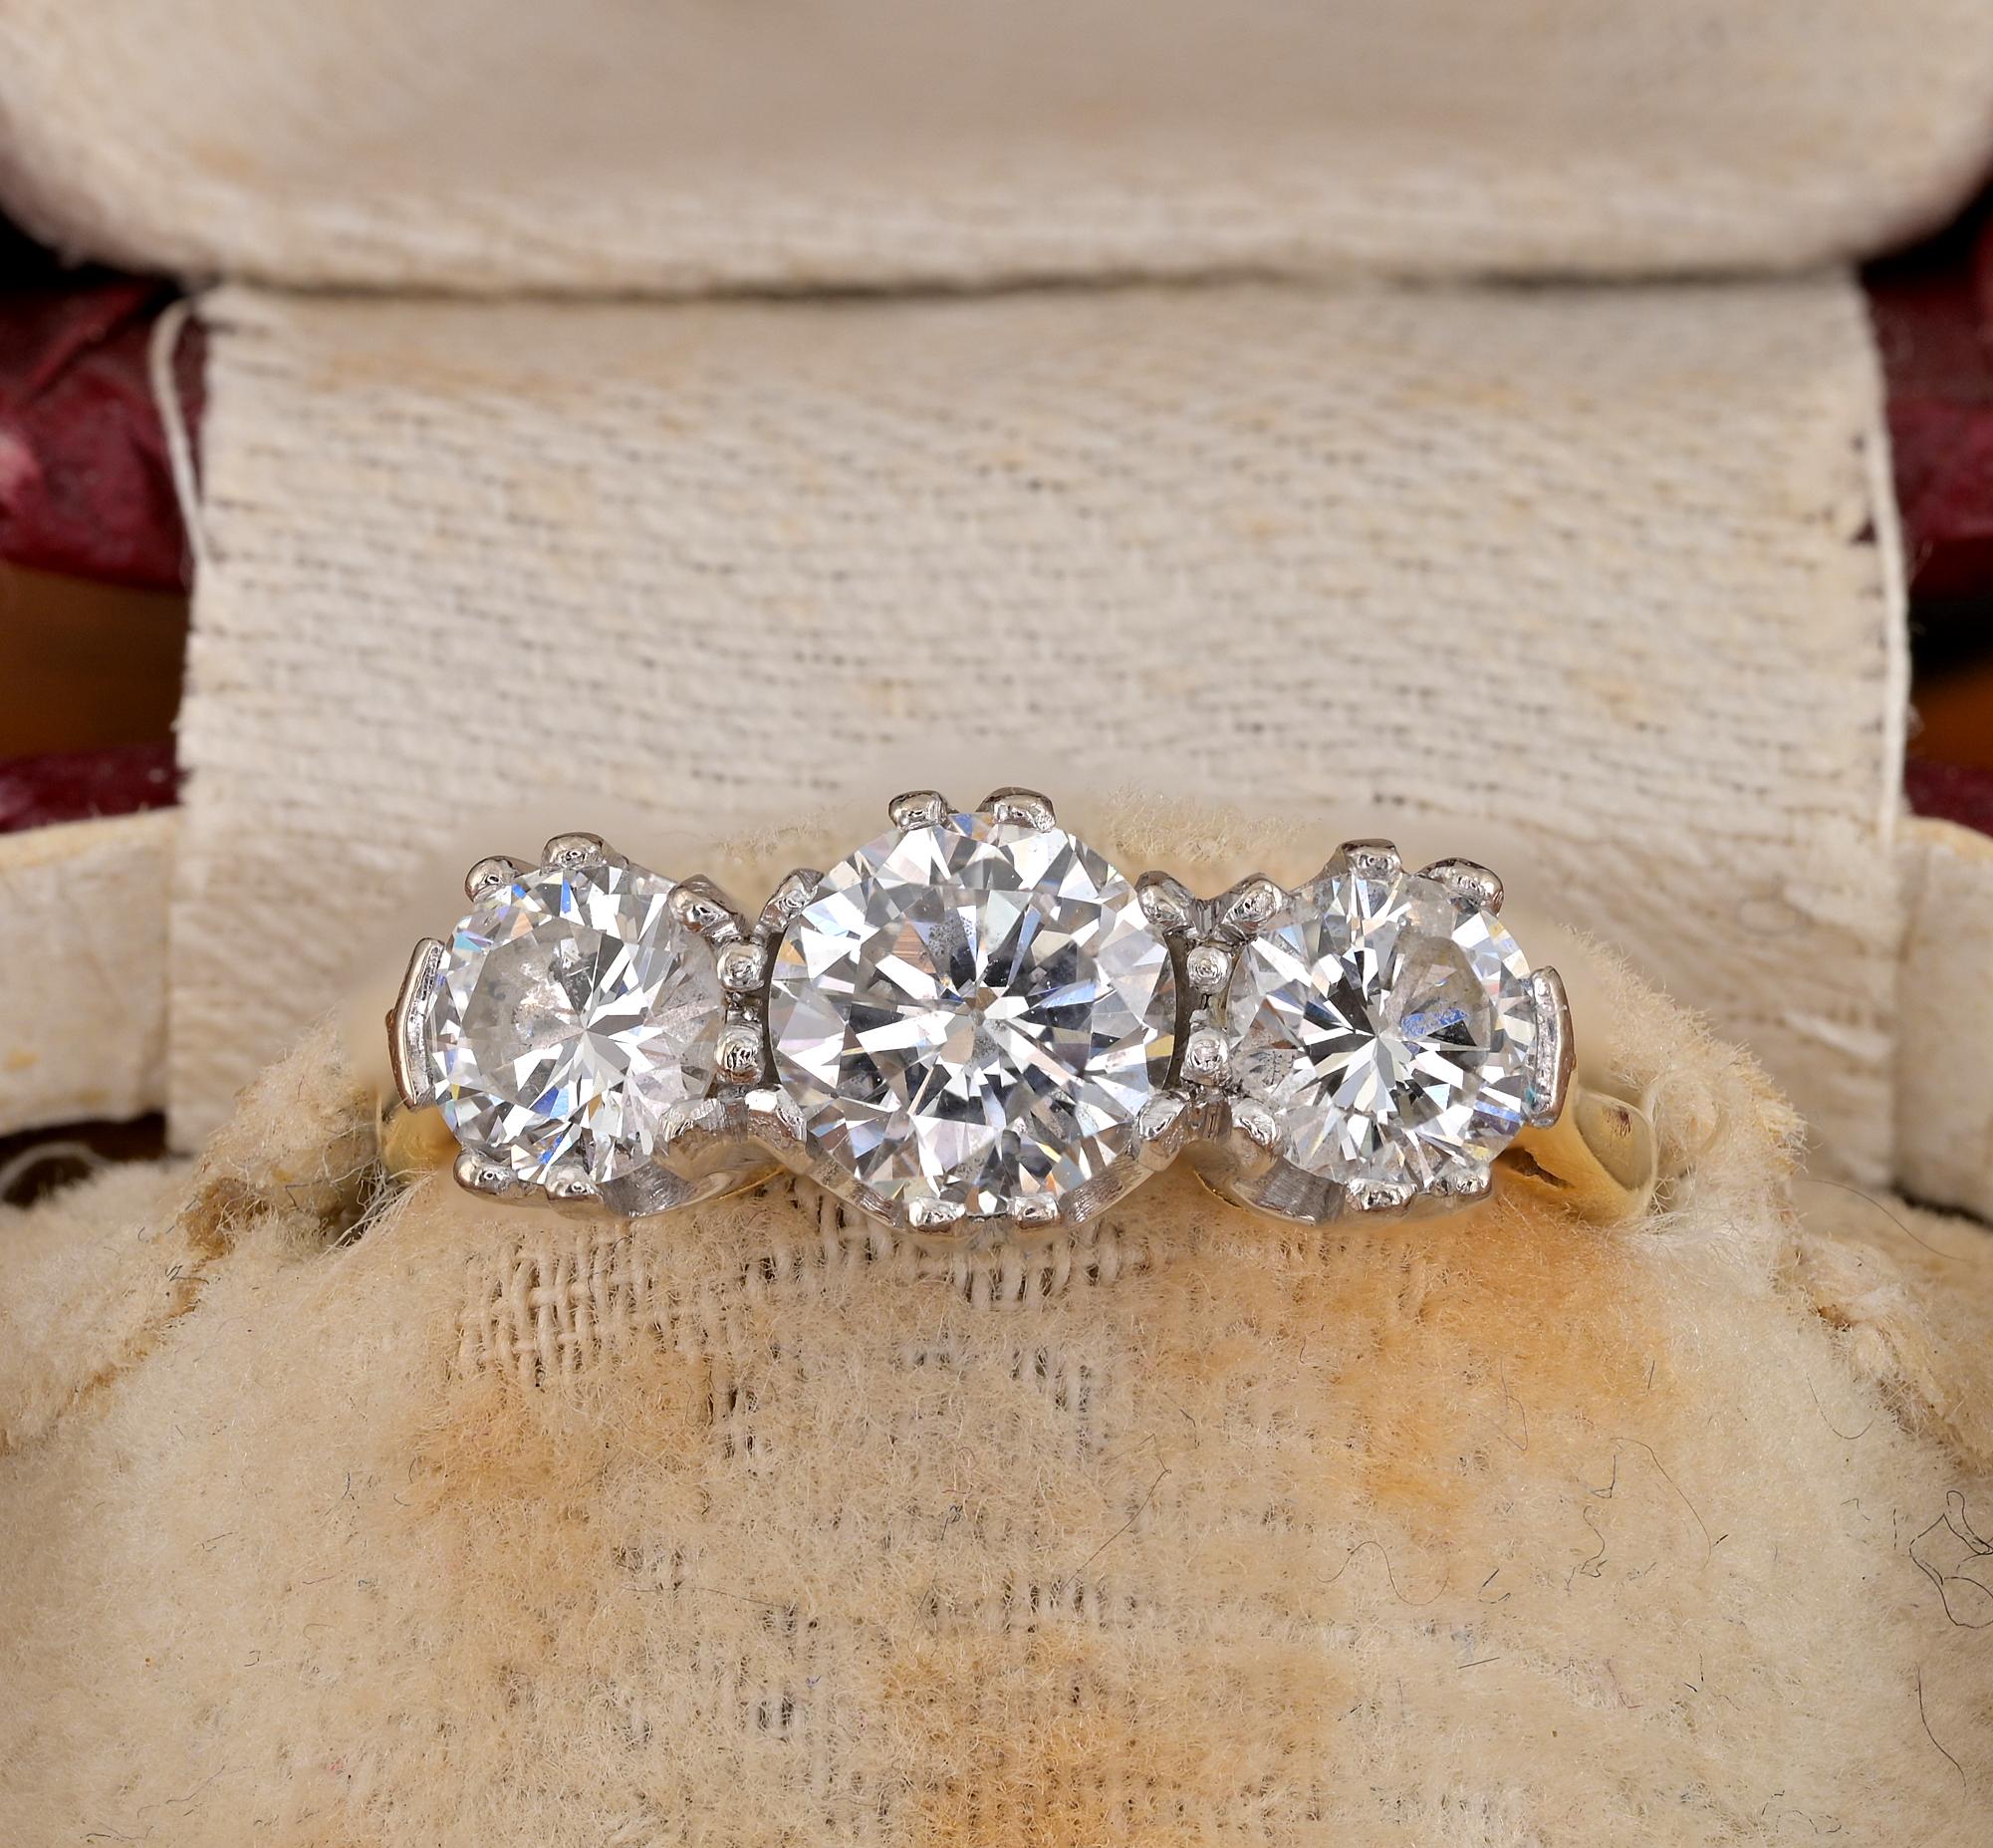 Dieser schöne späte Art Deco Ring ist 1935 ca. Englisch Herkunft
Handgefertigte Fassung aus massivem 18-karätigem Gold und Platin
Stilvolle Trilogie von unendlicher Eleganz, besetzt mit einem Trio aus strahlend weißen Diamanten im